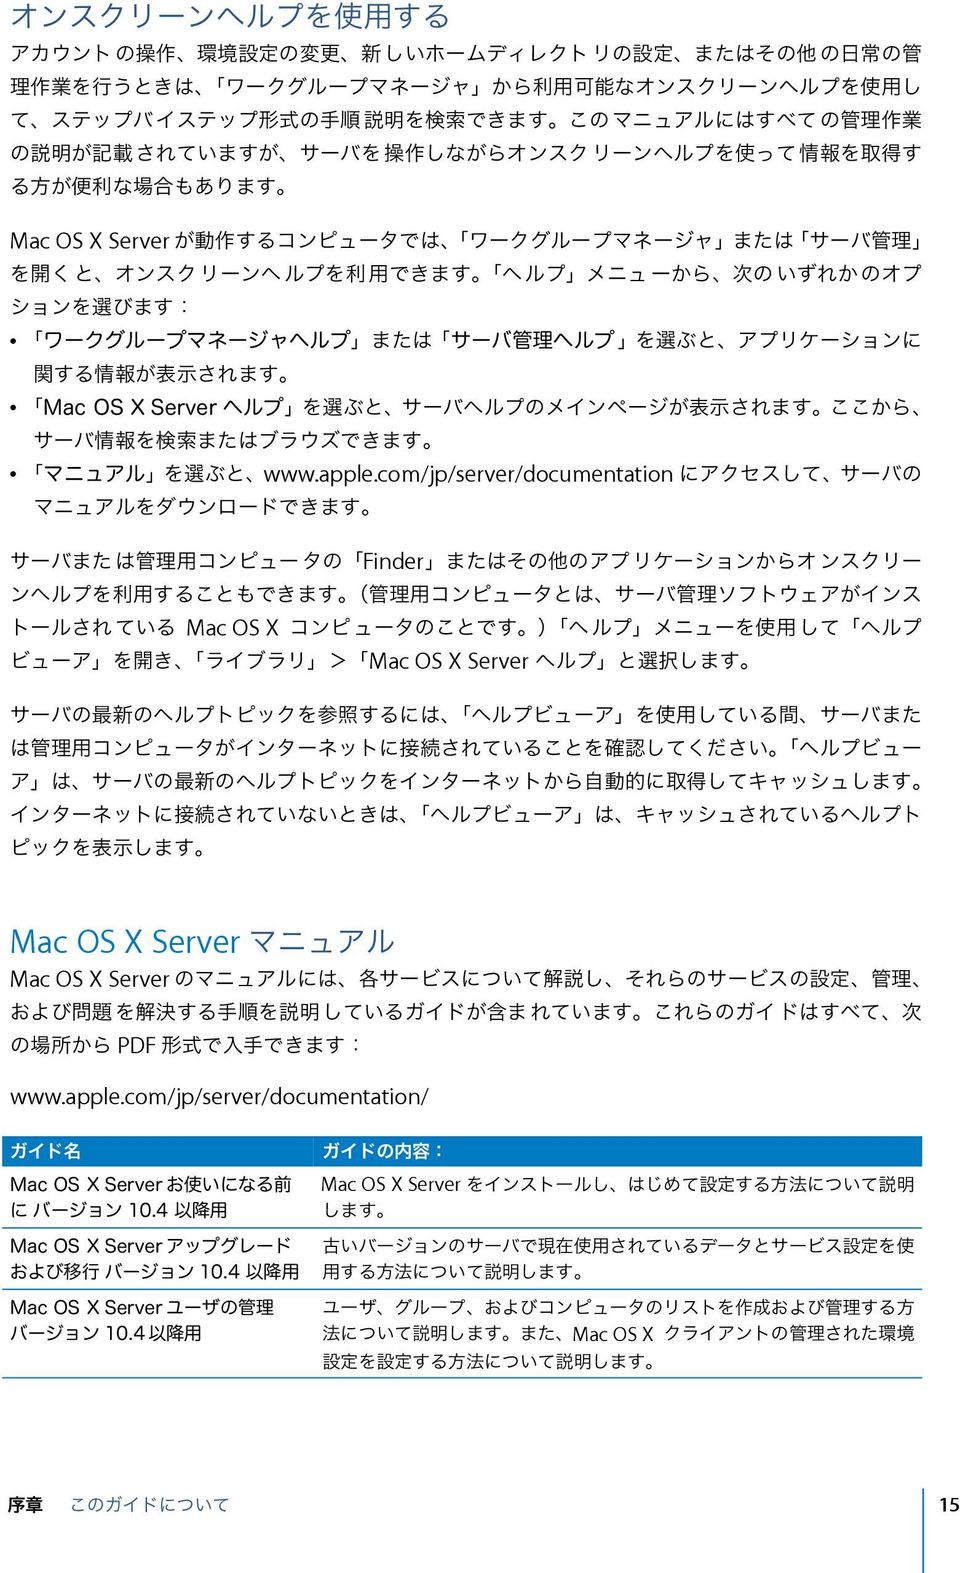 Mac OS X Server Mac OS X Server Mac OS X